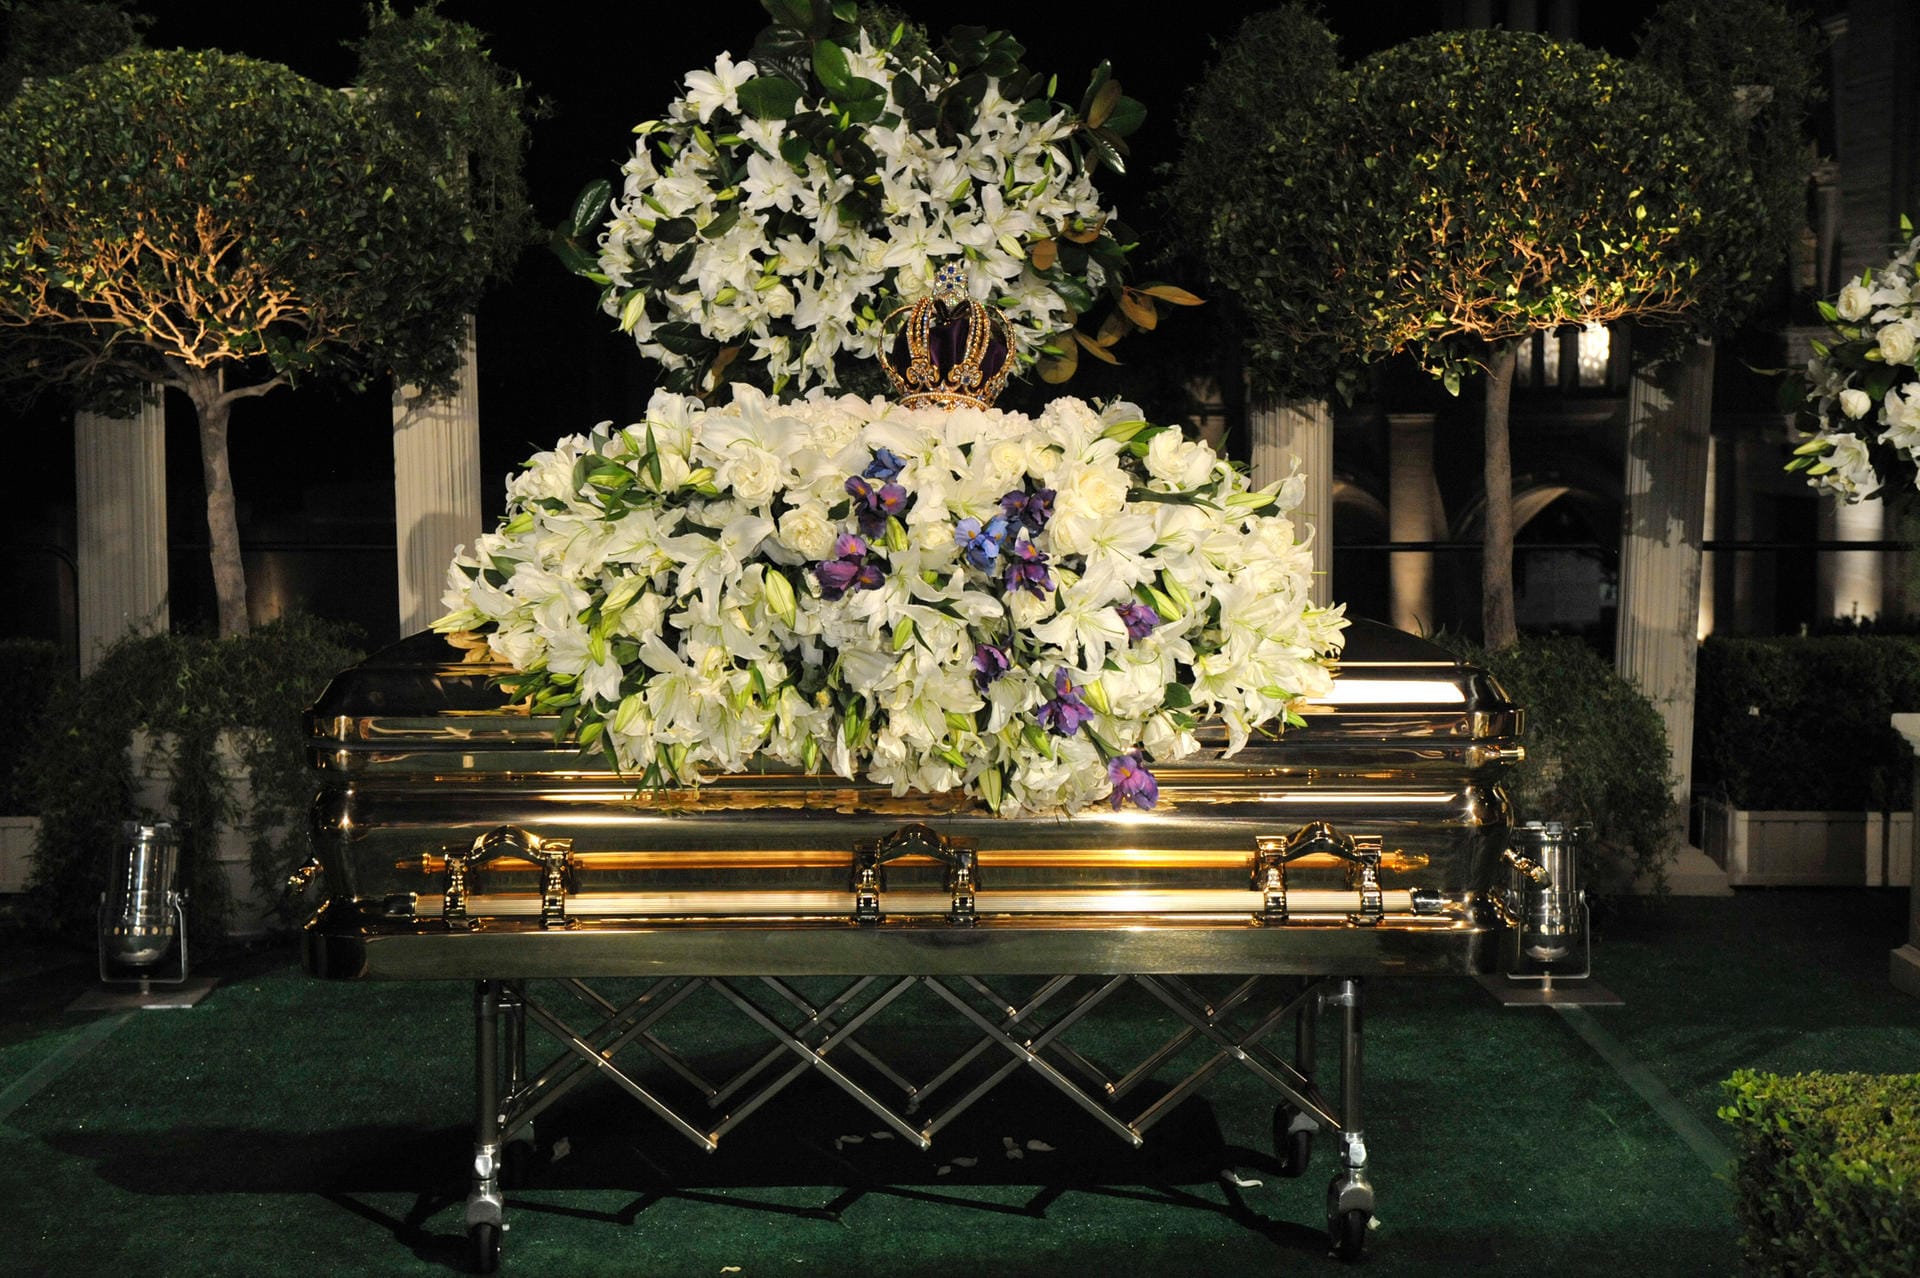 September 2009: Millionen Fans trauern um den King of Pop (1958-2009). In einem goldenen Sarg wird der größte Musiker aller Zeiten im Forest Lawn Memorial Park in Los Angeles bestattet.